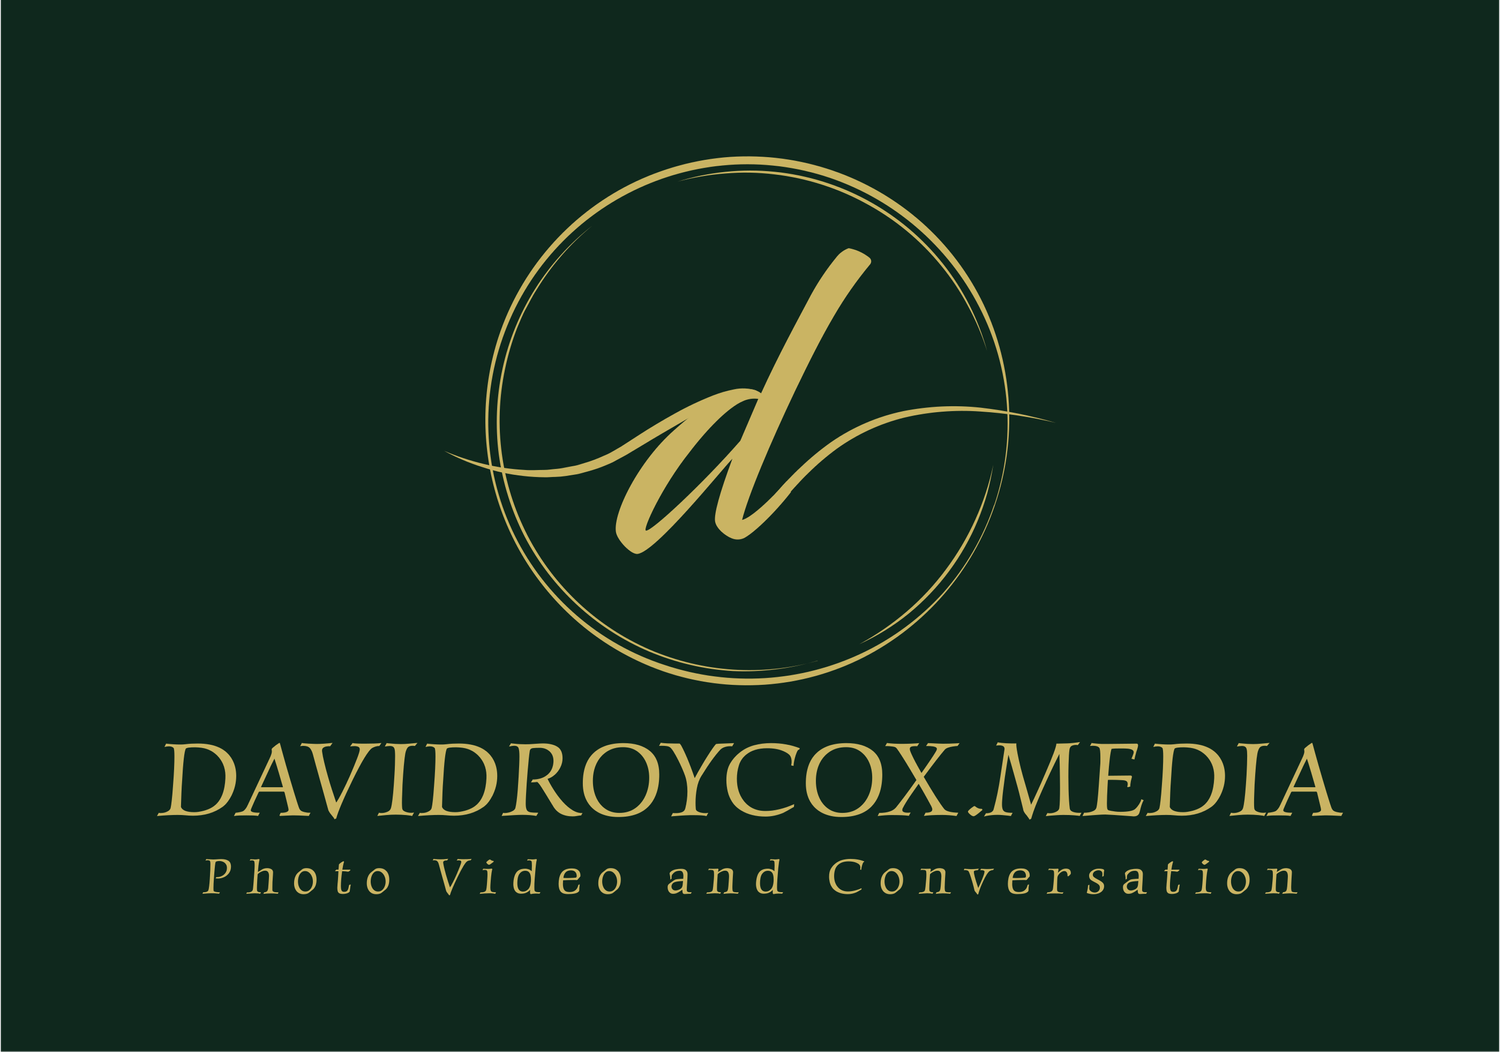 WWW.DAVIDROYCOX.MEDIA